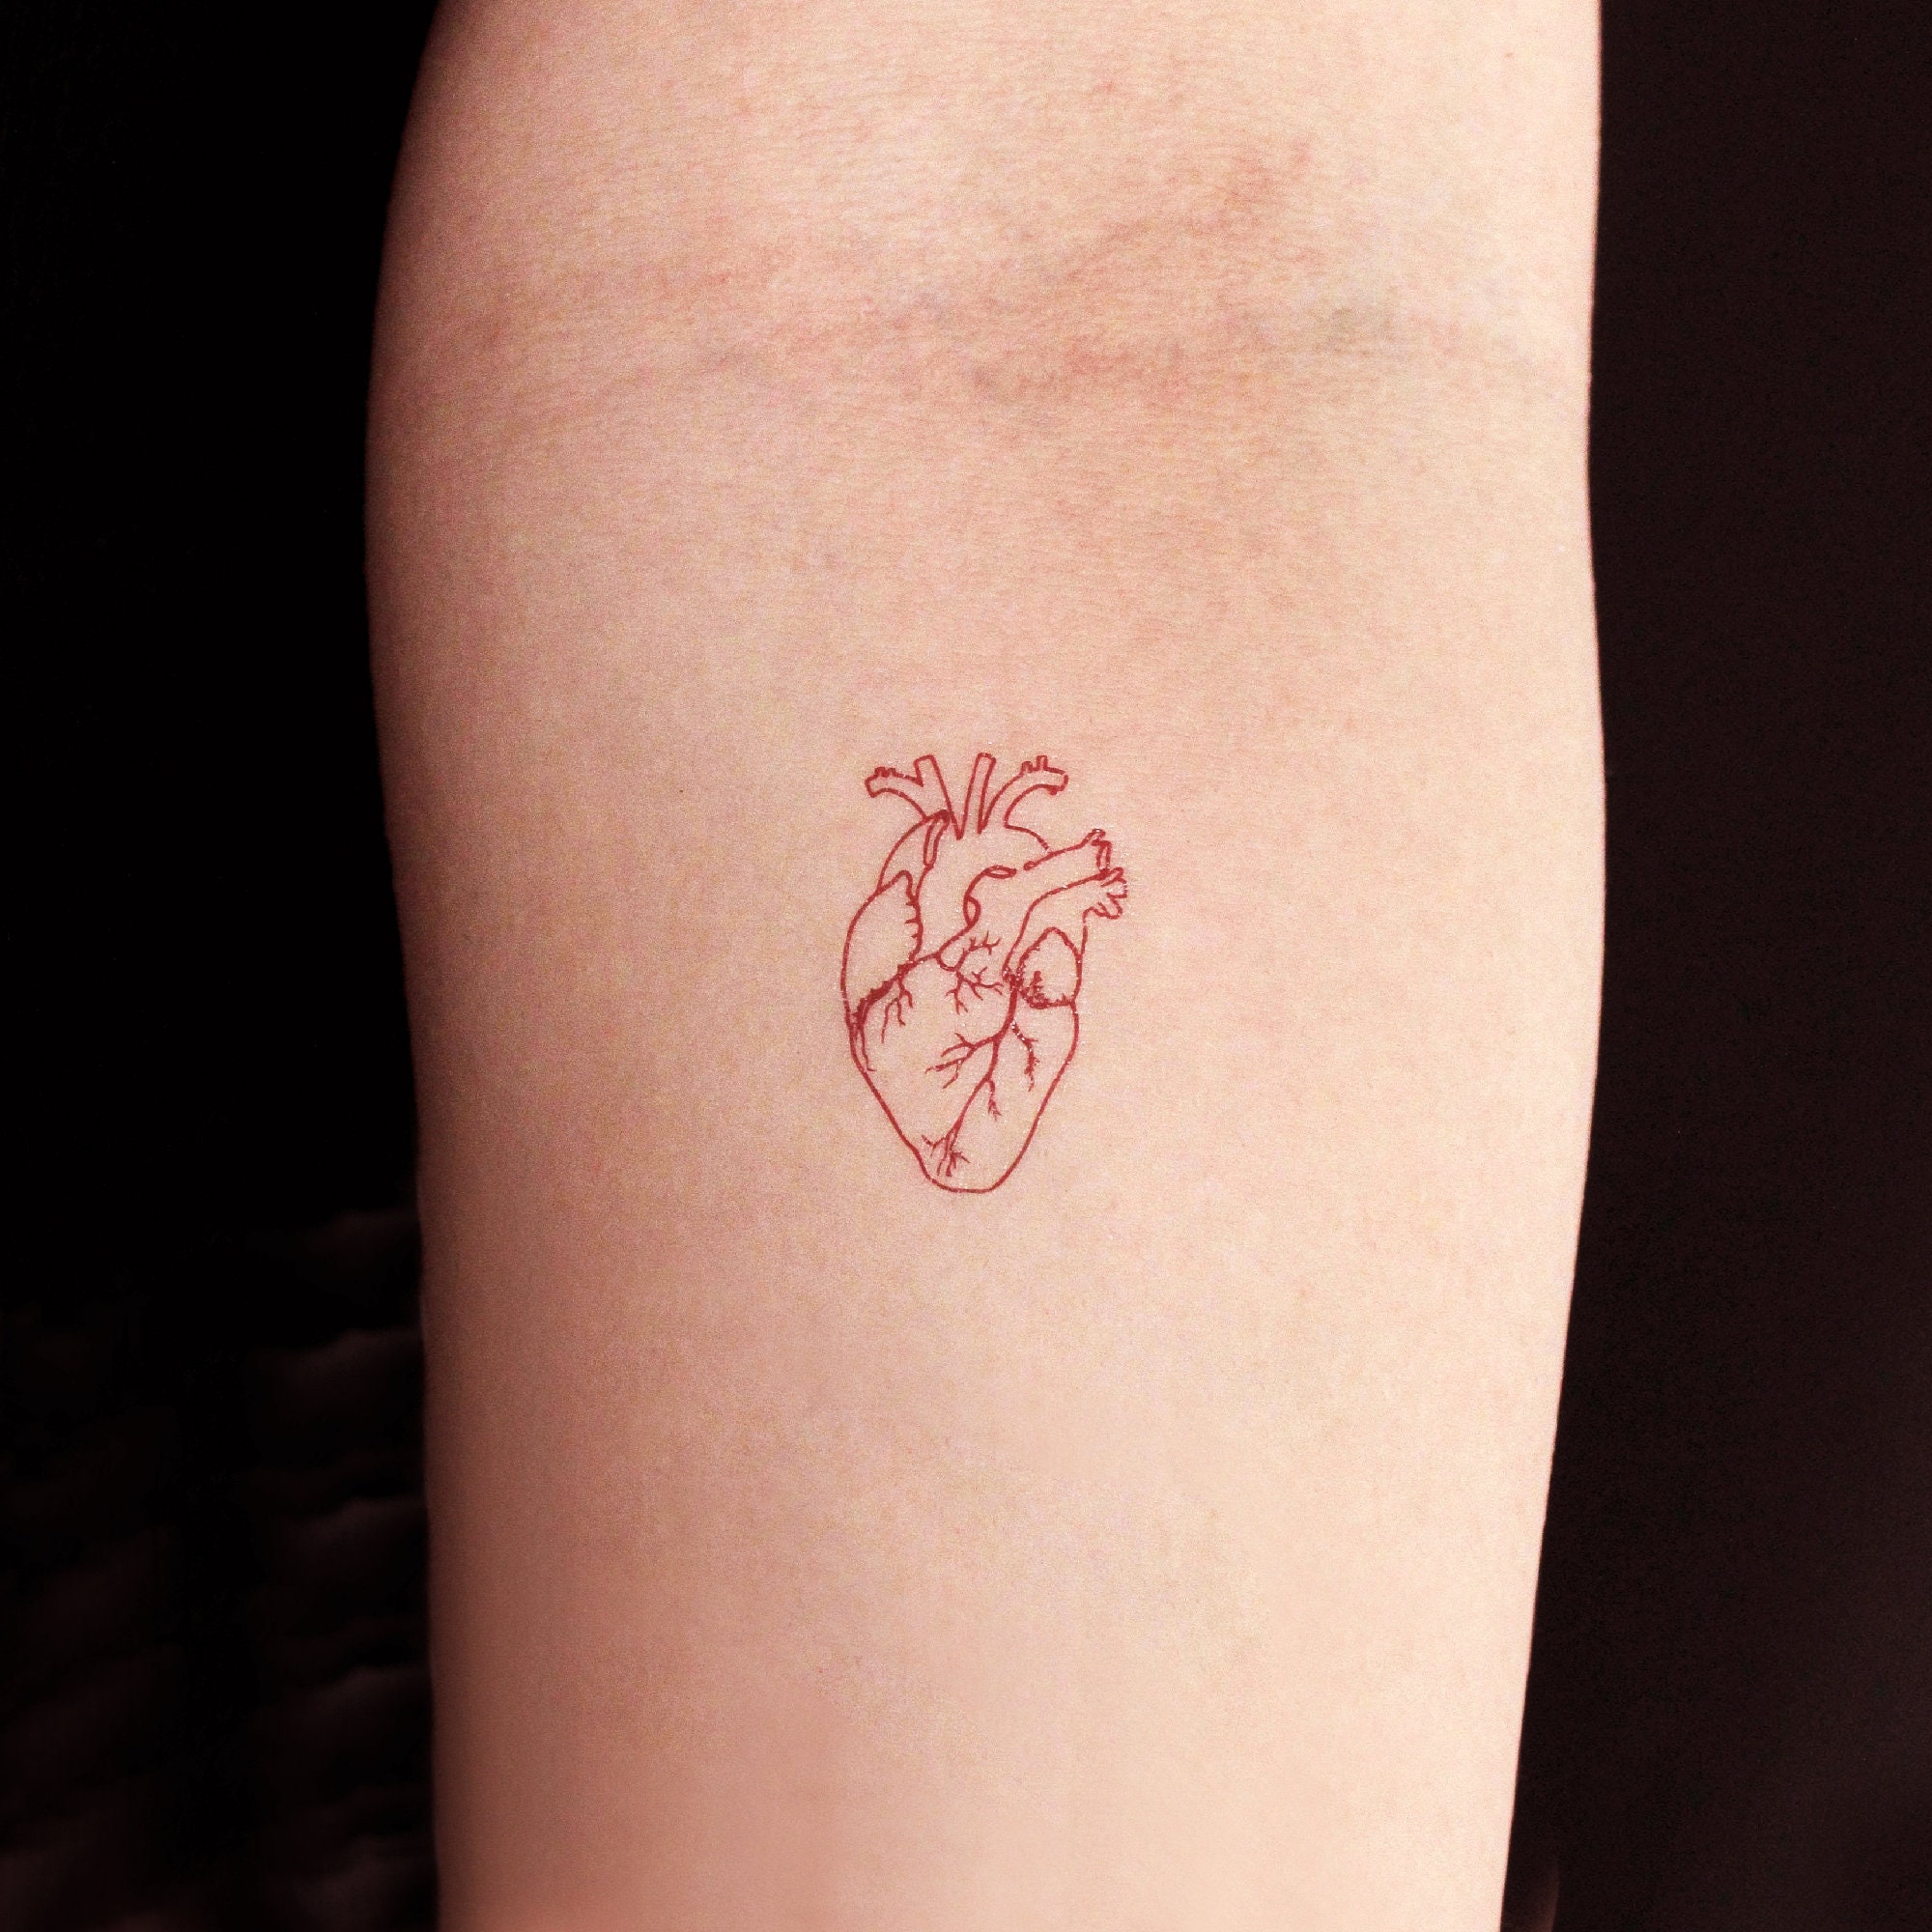 Red ink Tattoo on Dark Skin  Red ink tattoos, Mini tattoos, Simplistic  tattoos